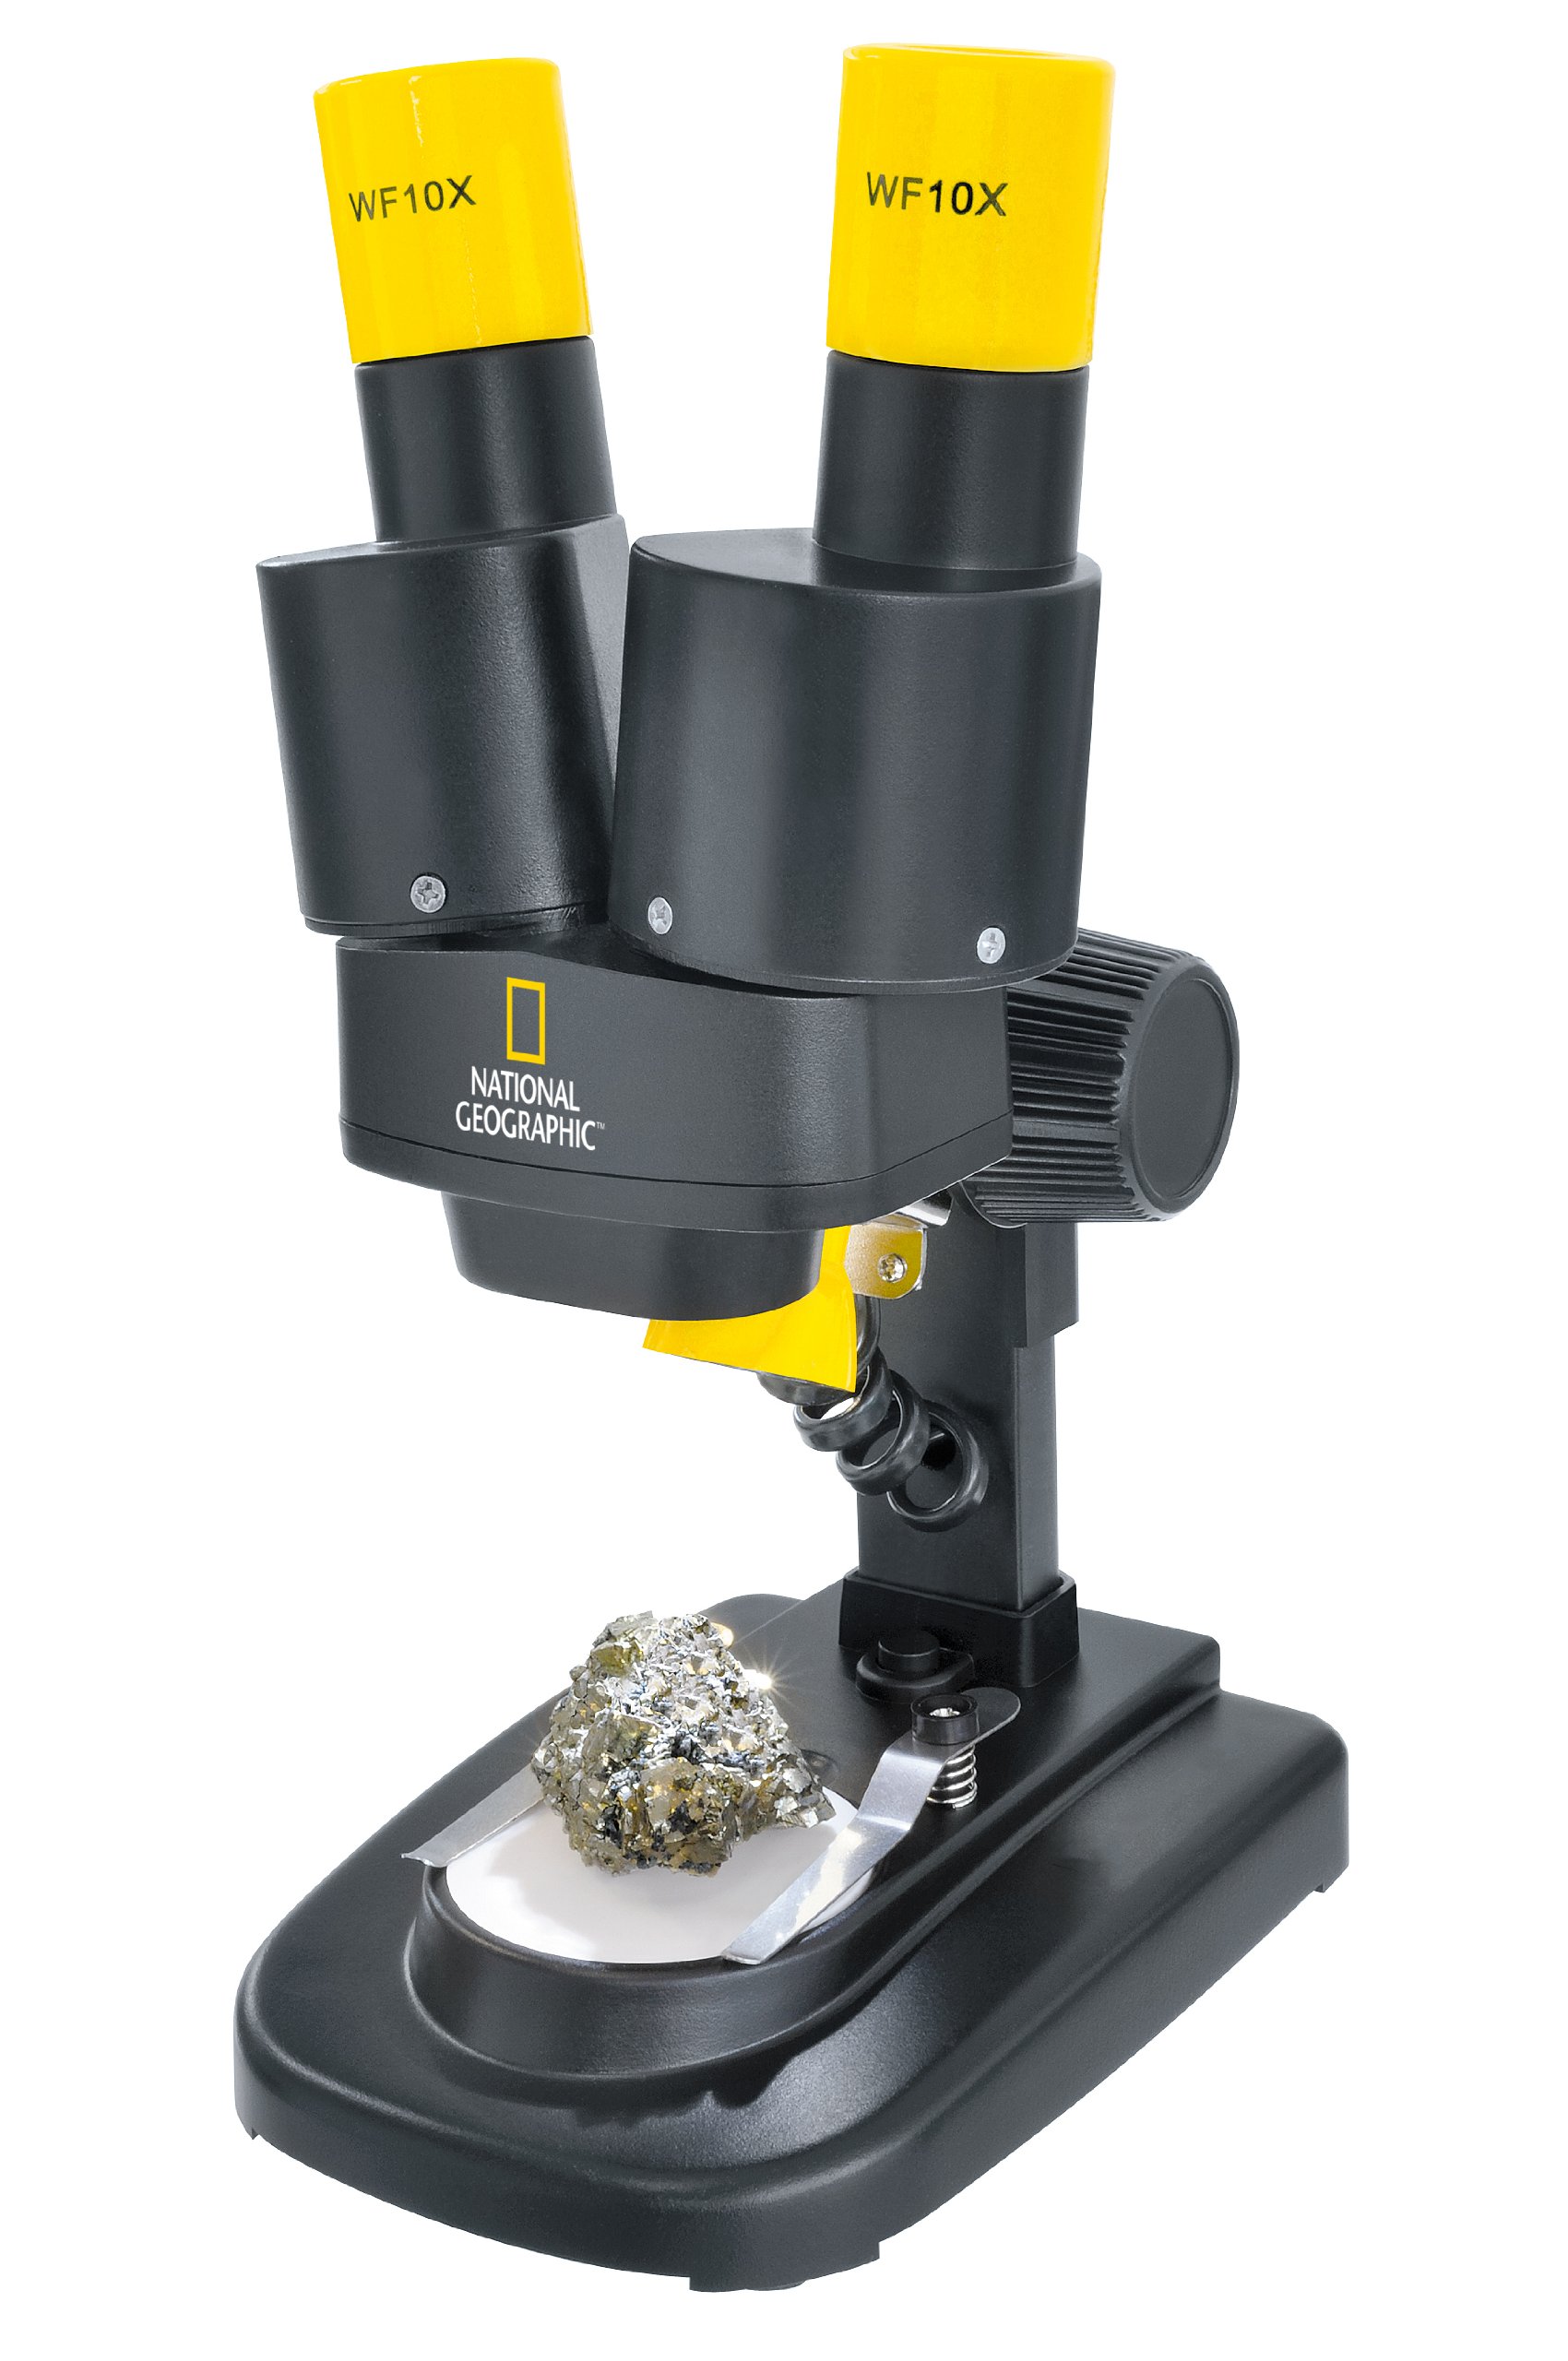 National Geographic Stereo 3D Mikroskop mit 20x Vergrößerung und Auflichtbeleuchtung für Kinder und Erwachsene für die Beobachtung von Steinen, Münzen, Insekten und vielem mehr